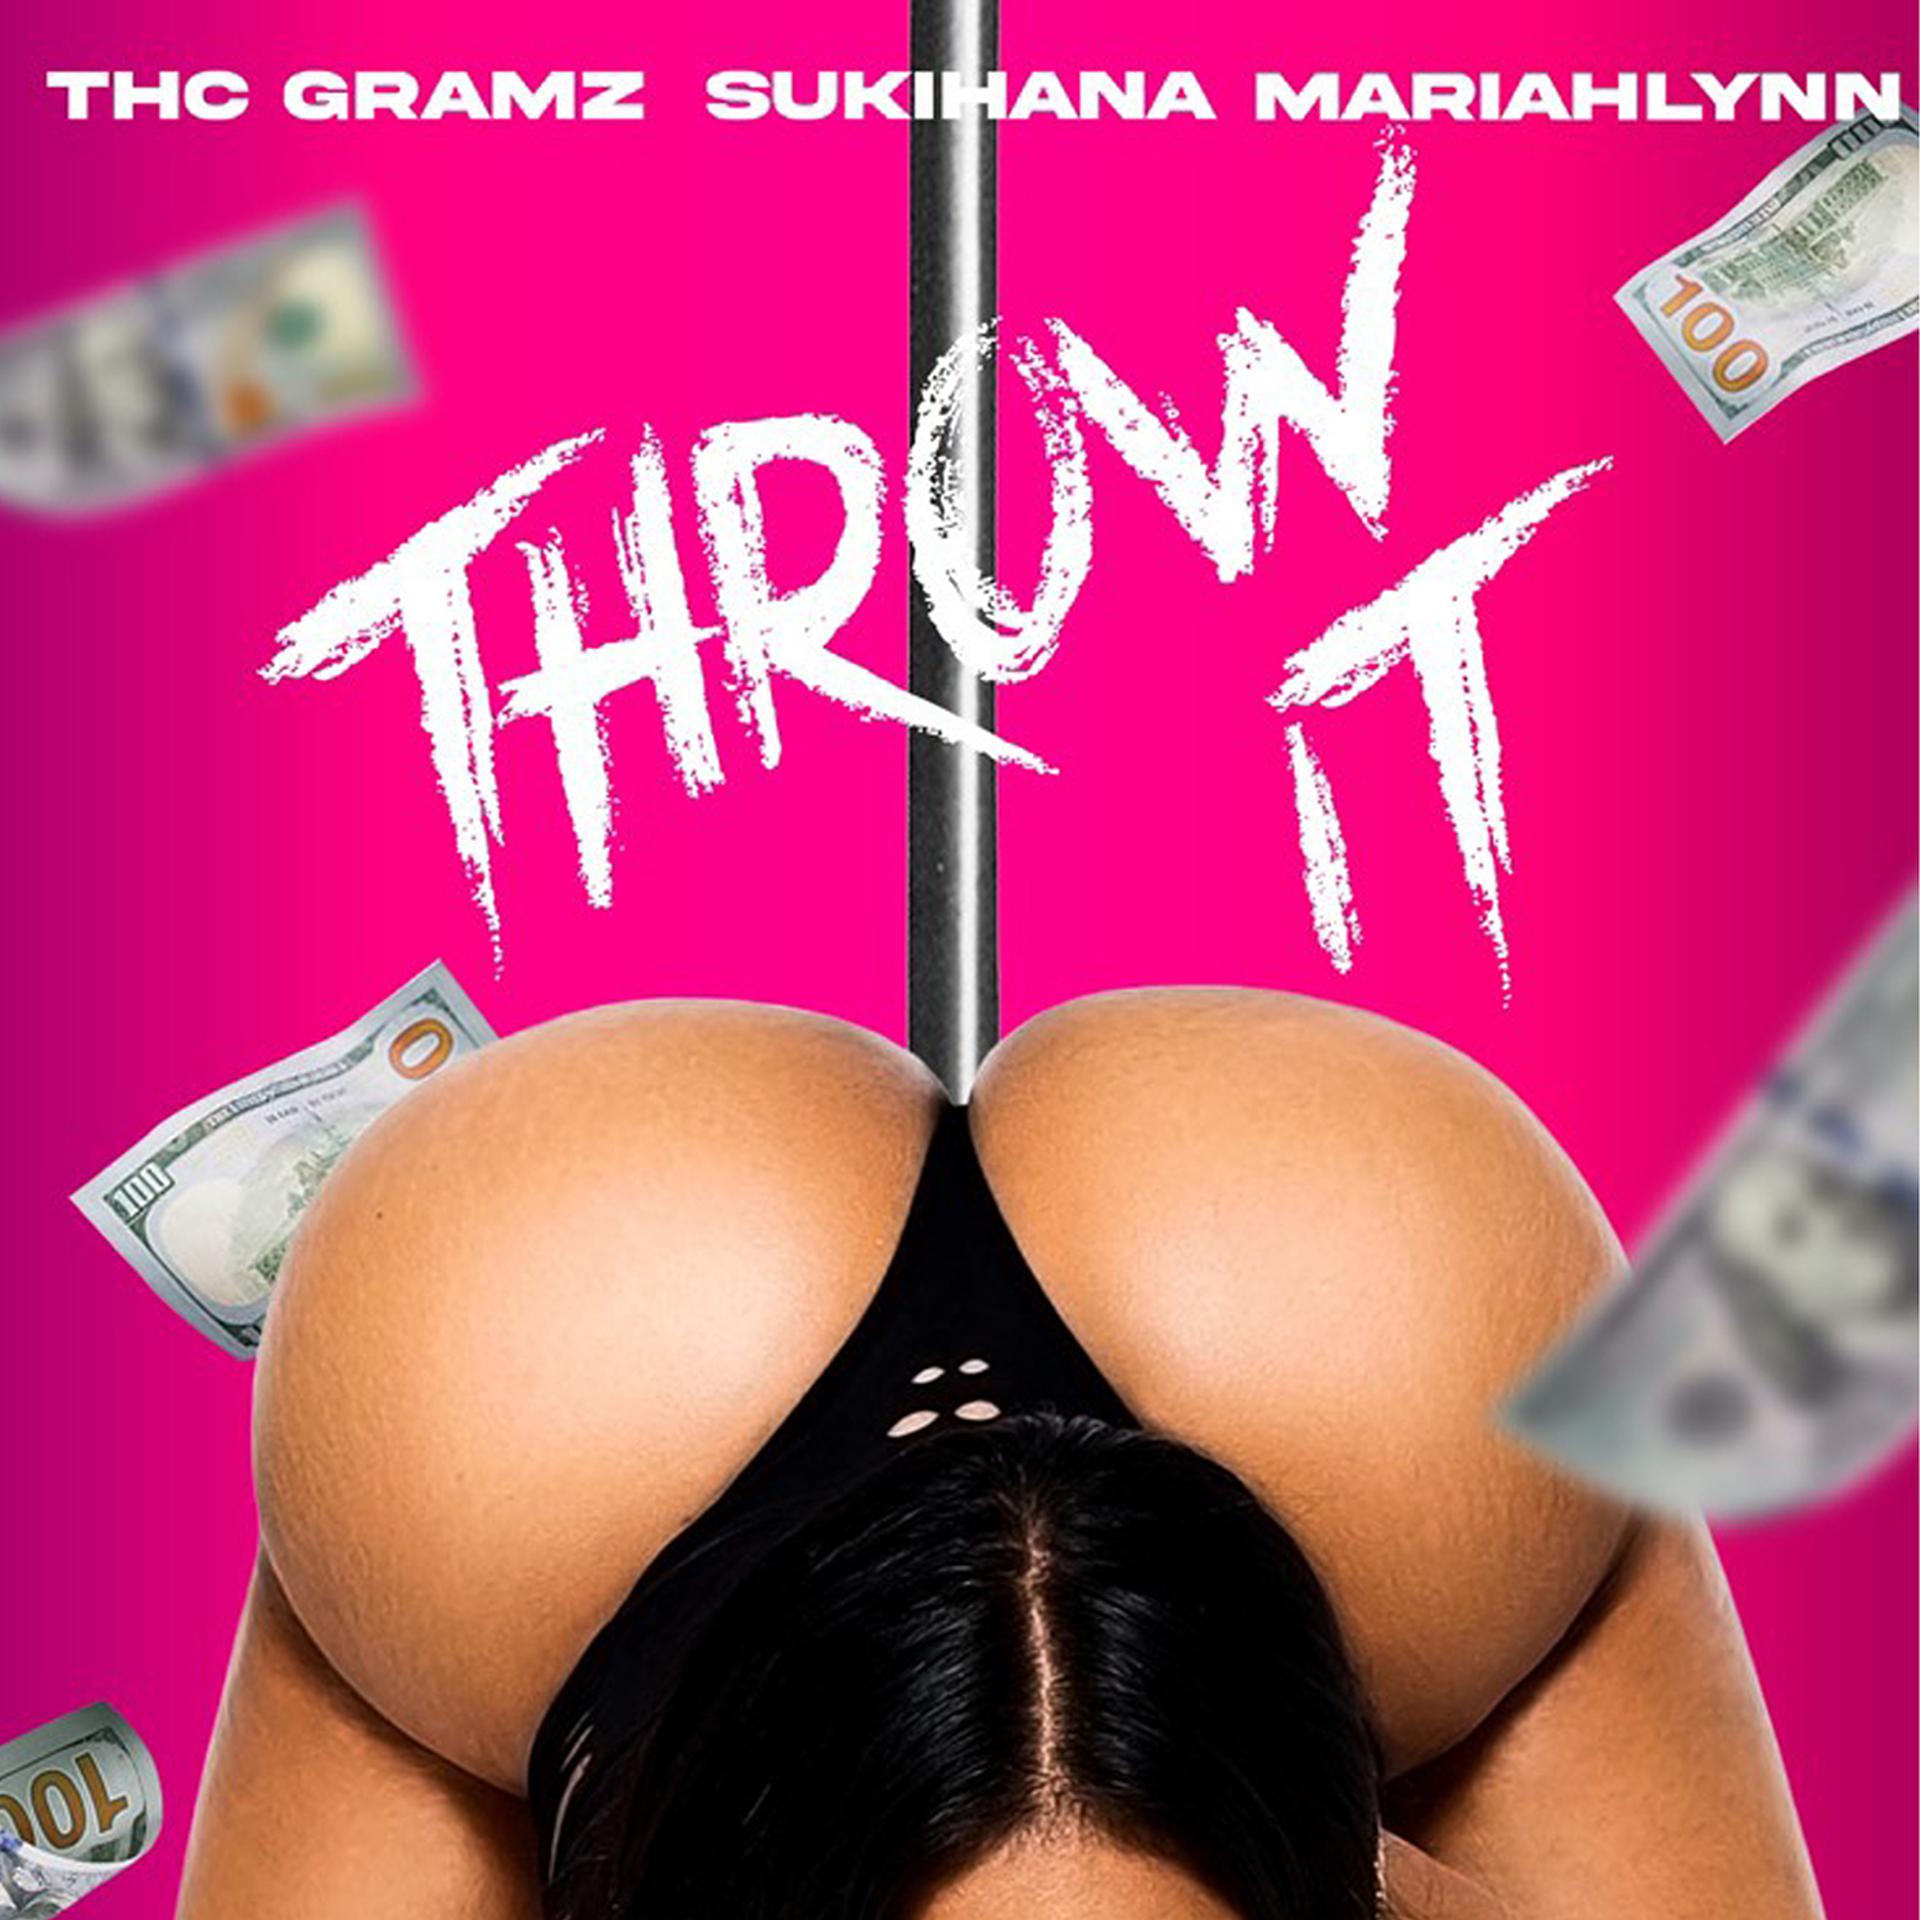 Постер альбома Throw It